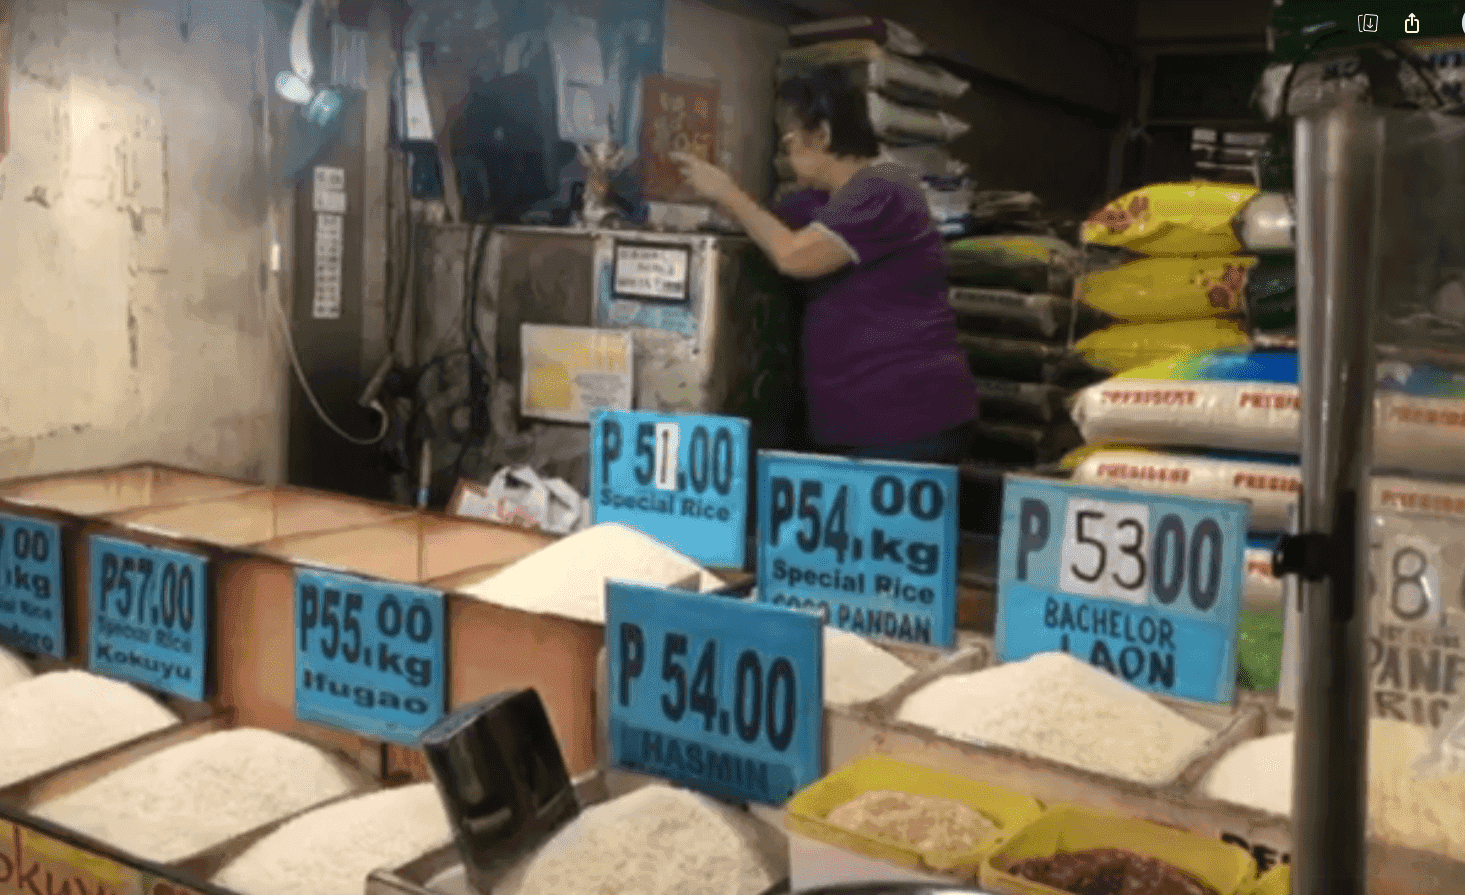 DA has no control to lower rice price to P20 per kilo